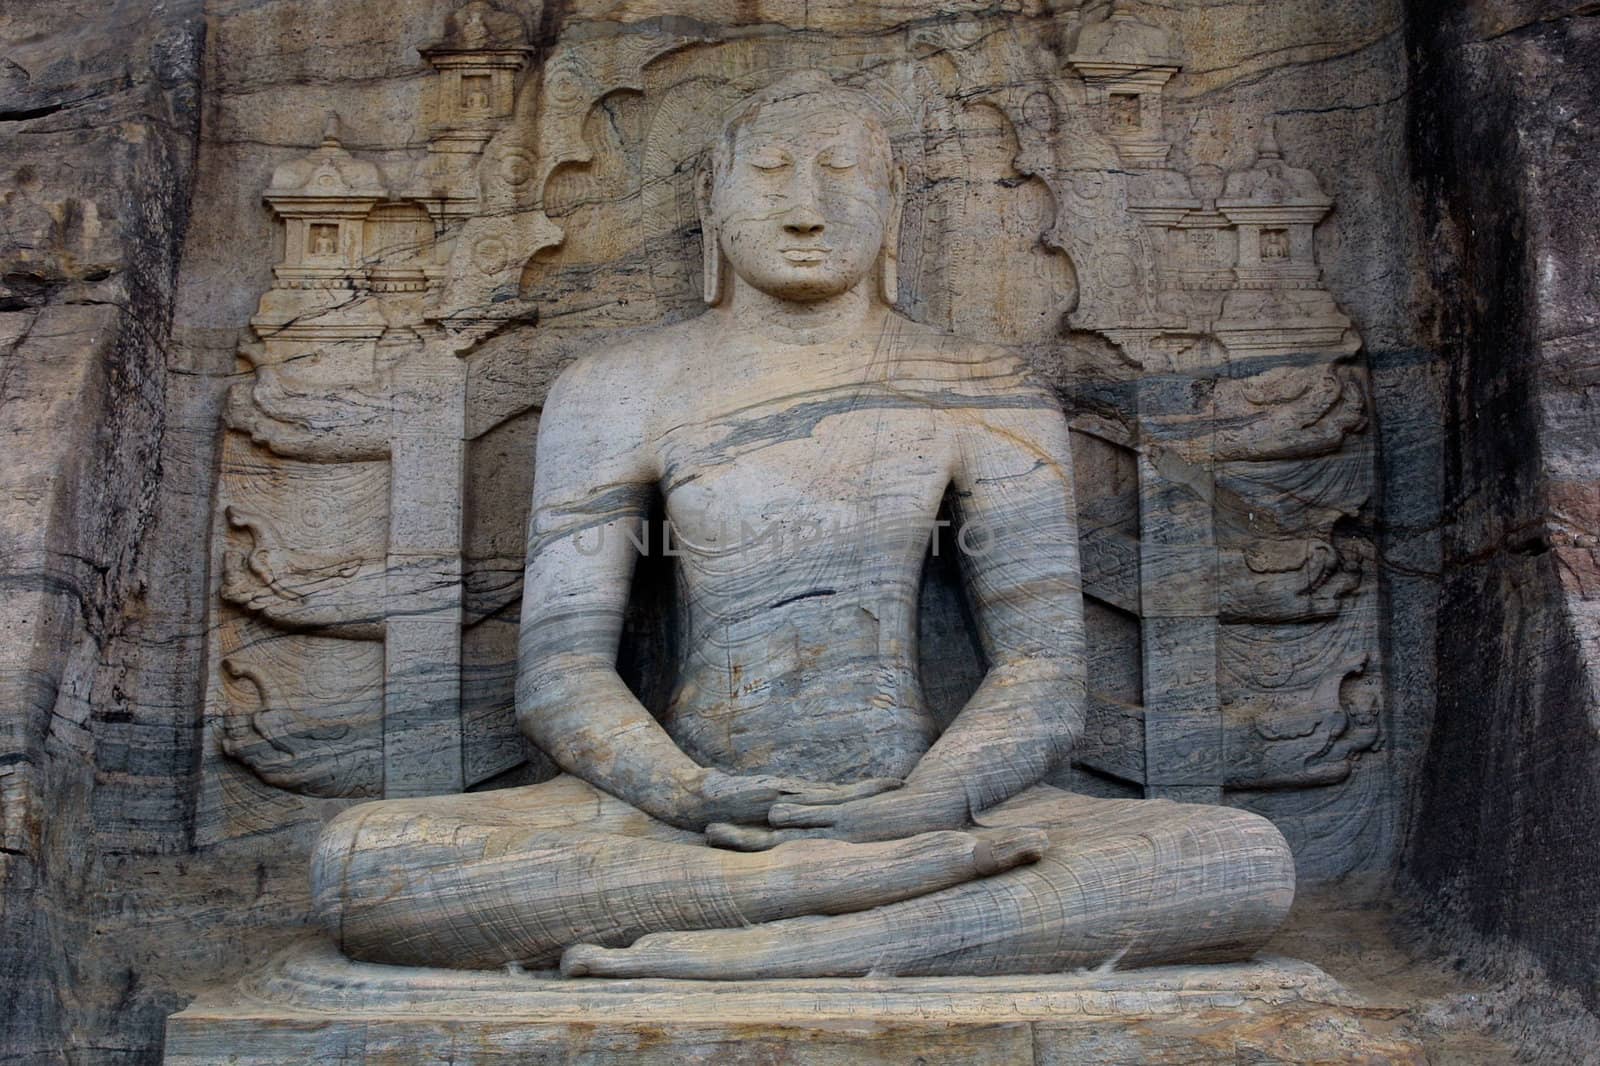 The Seated Buddha by zambezi